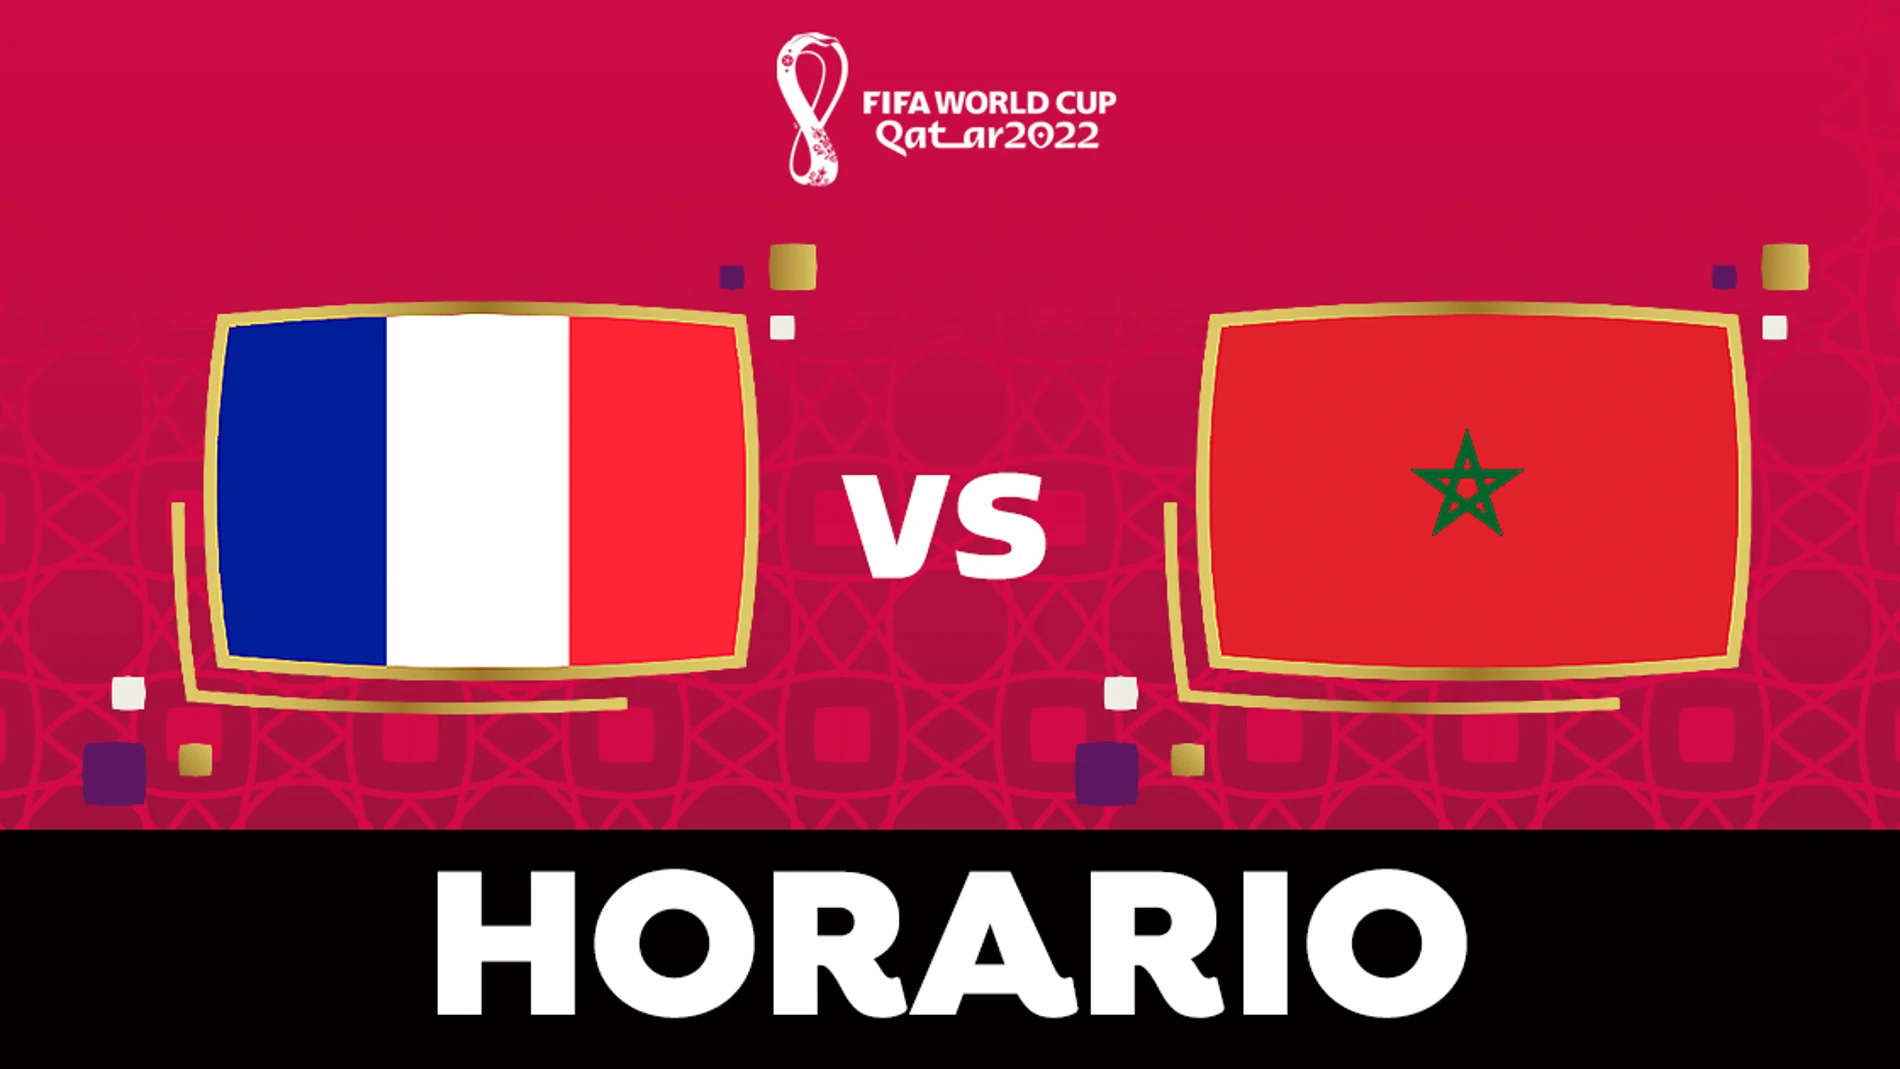 Francia - Horario dónde ver en directo el partido de semifinales del Mundial de Qatar 2022